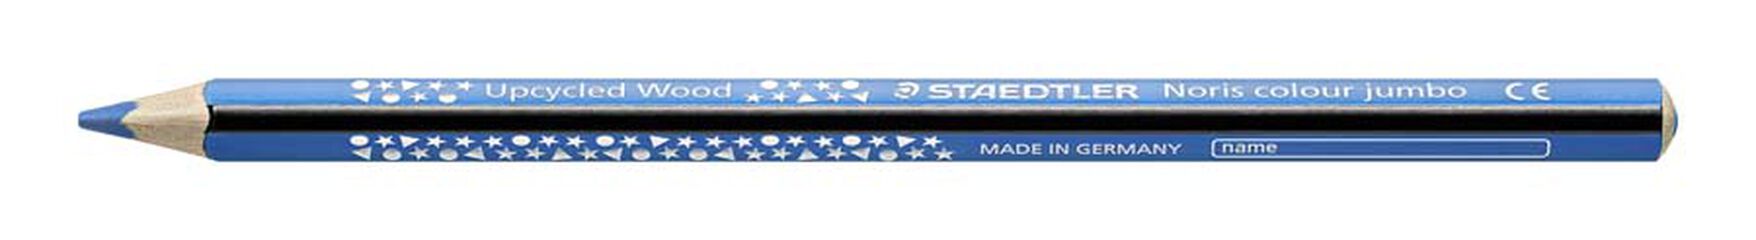 Lápices para Dibujo Profesional Staedtler Mars Lumograph Azul 6 piezas